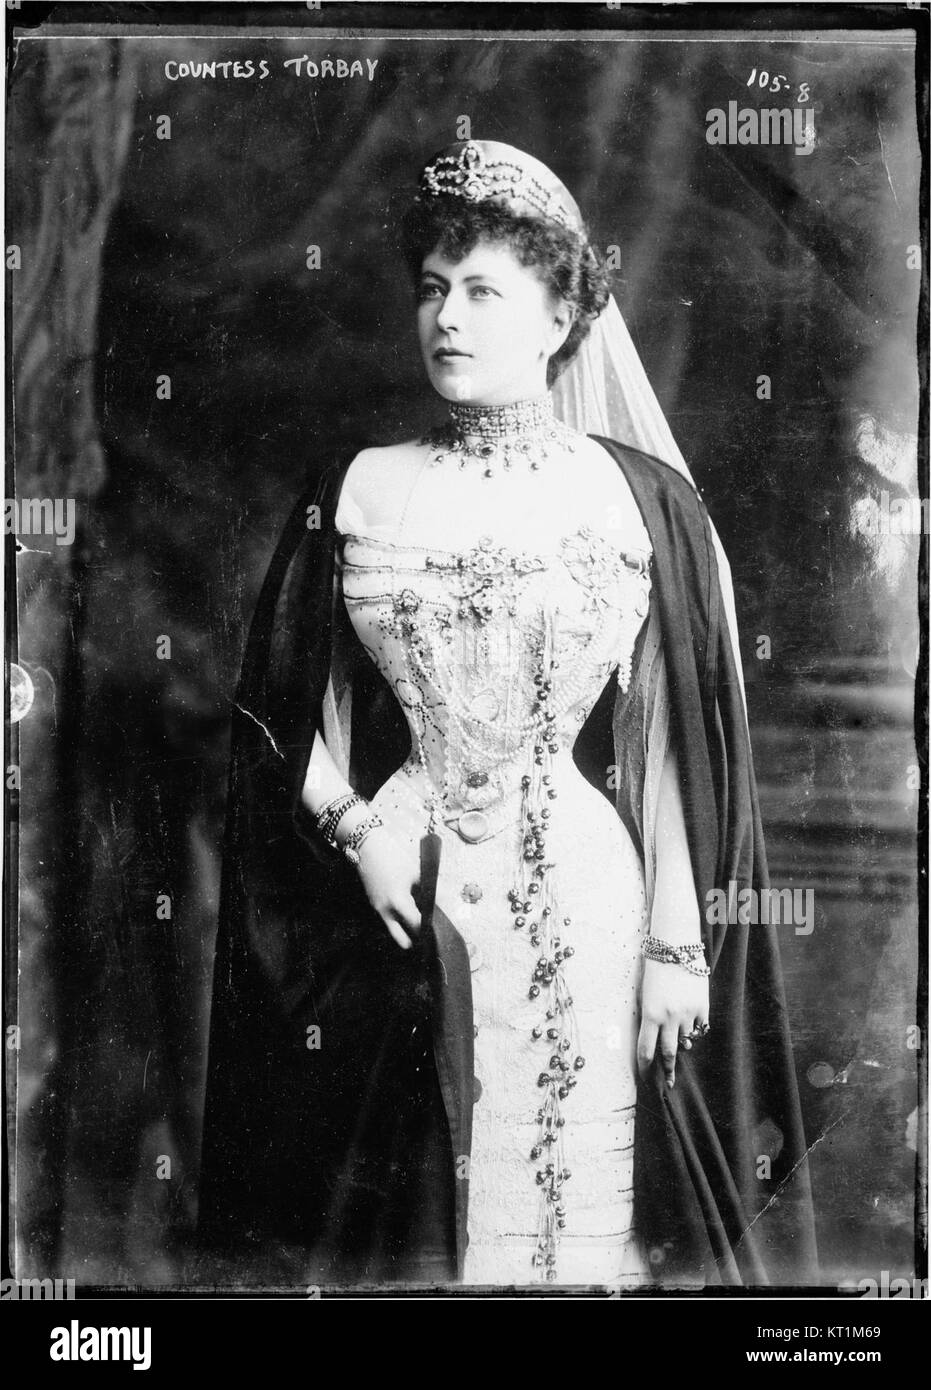 La comtesse Sophie de Merenberg, comtesse de Torby (COL ggbain.00604) Banque D'Images